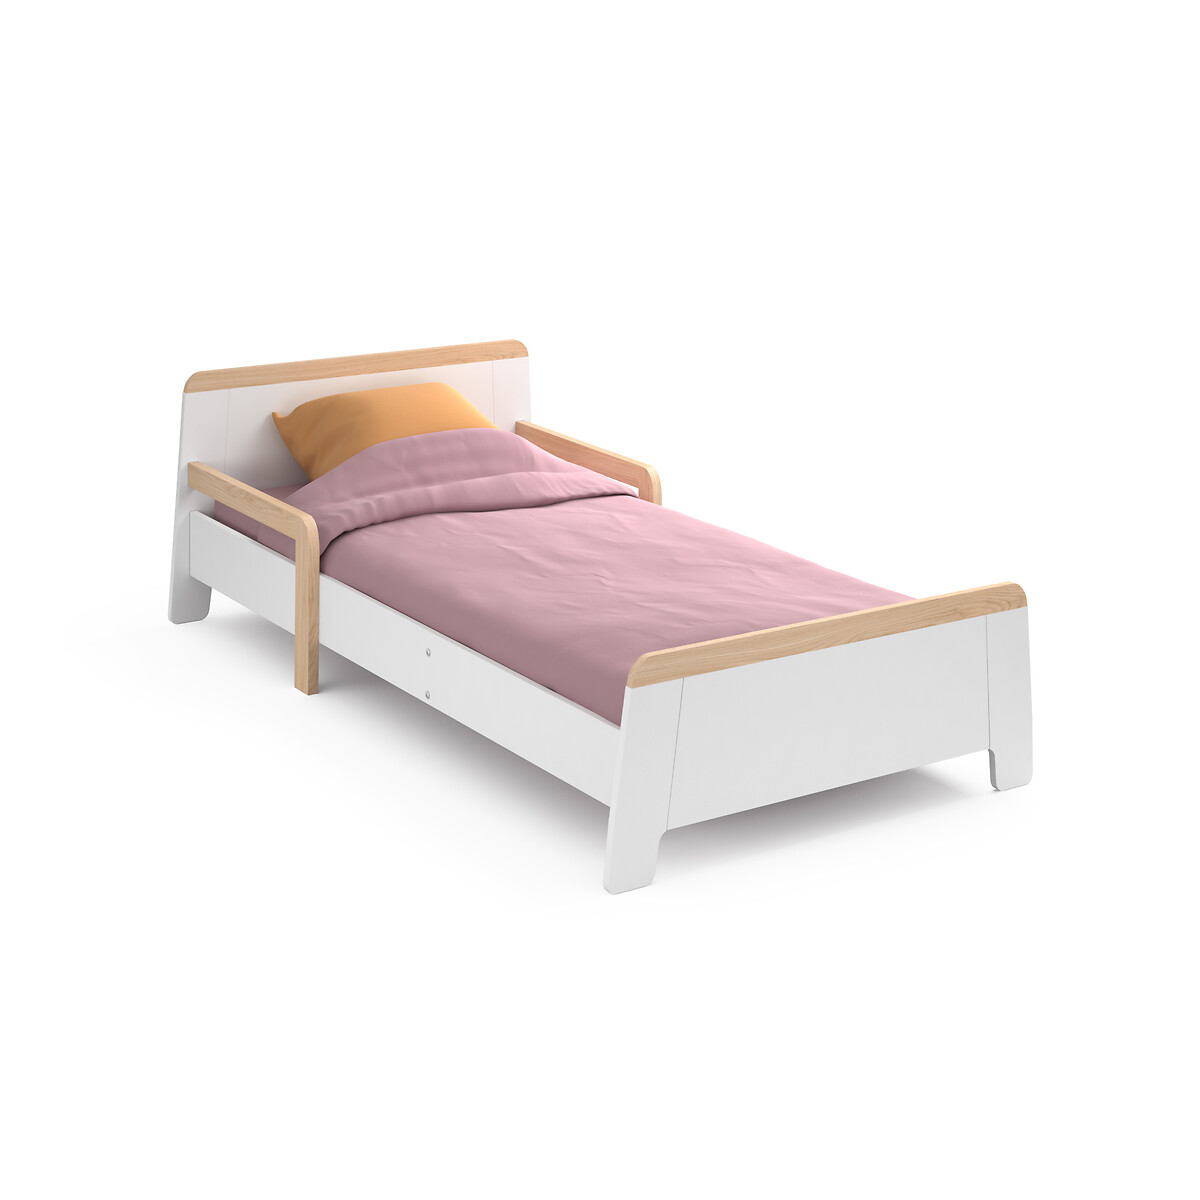 Кроватка детская раскладная Arturo 90 x 190 см белый кровать детская раскладная waldo 90 x 190 см каштановый